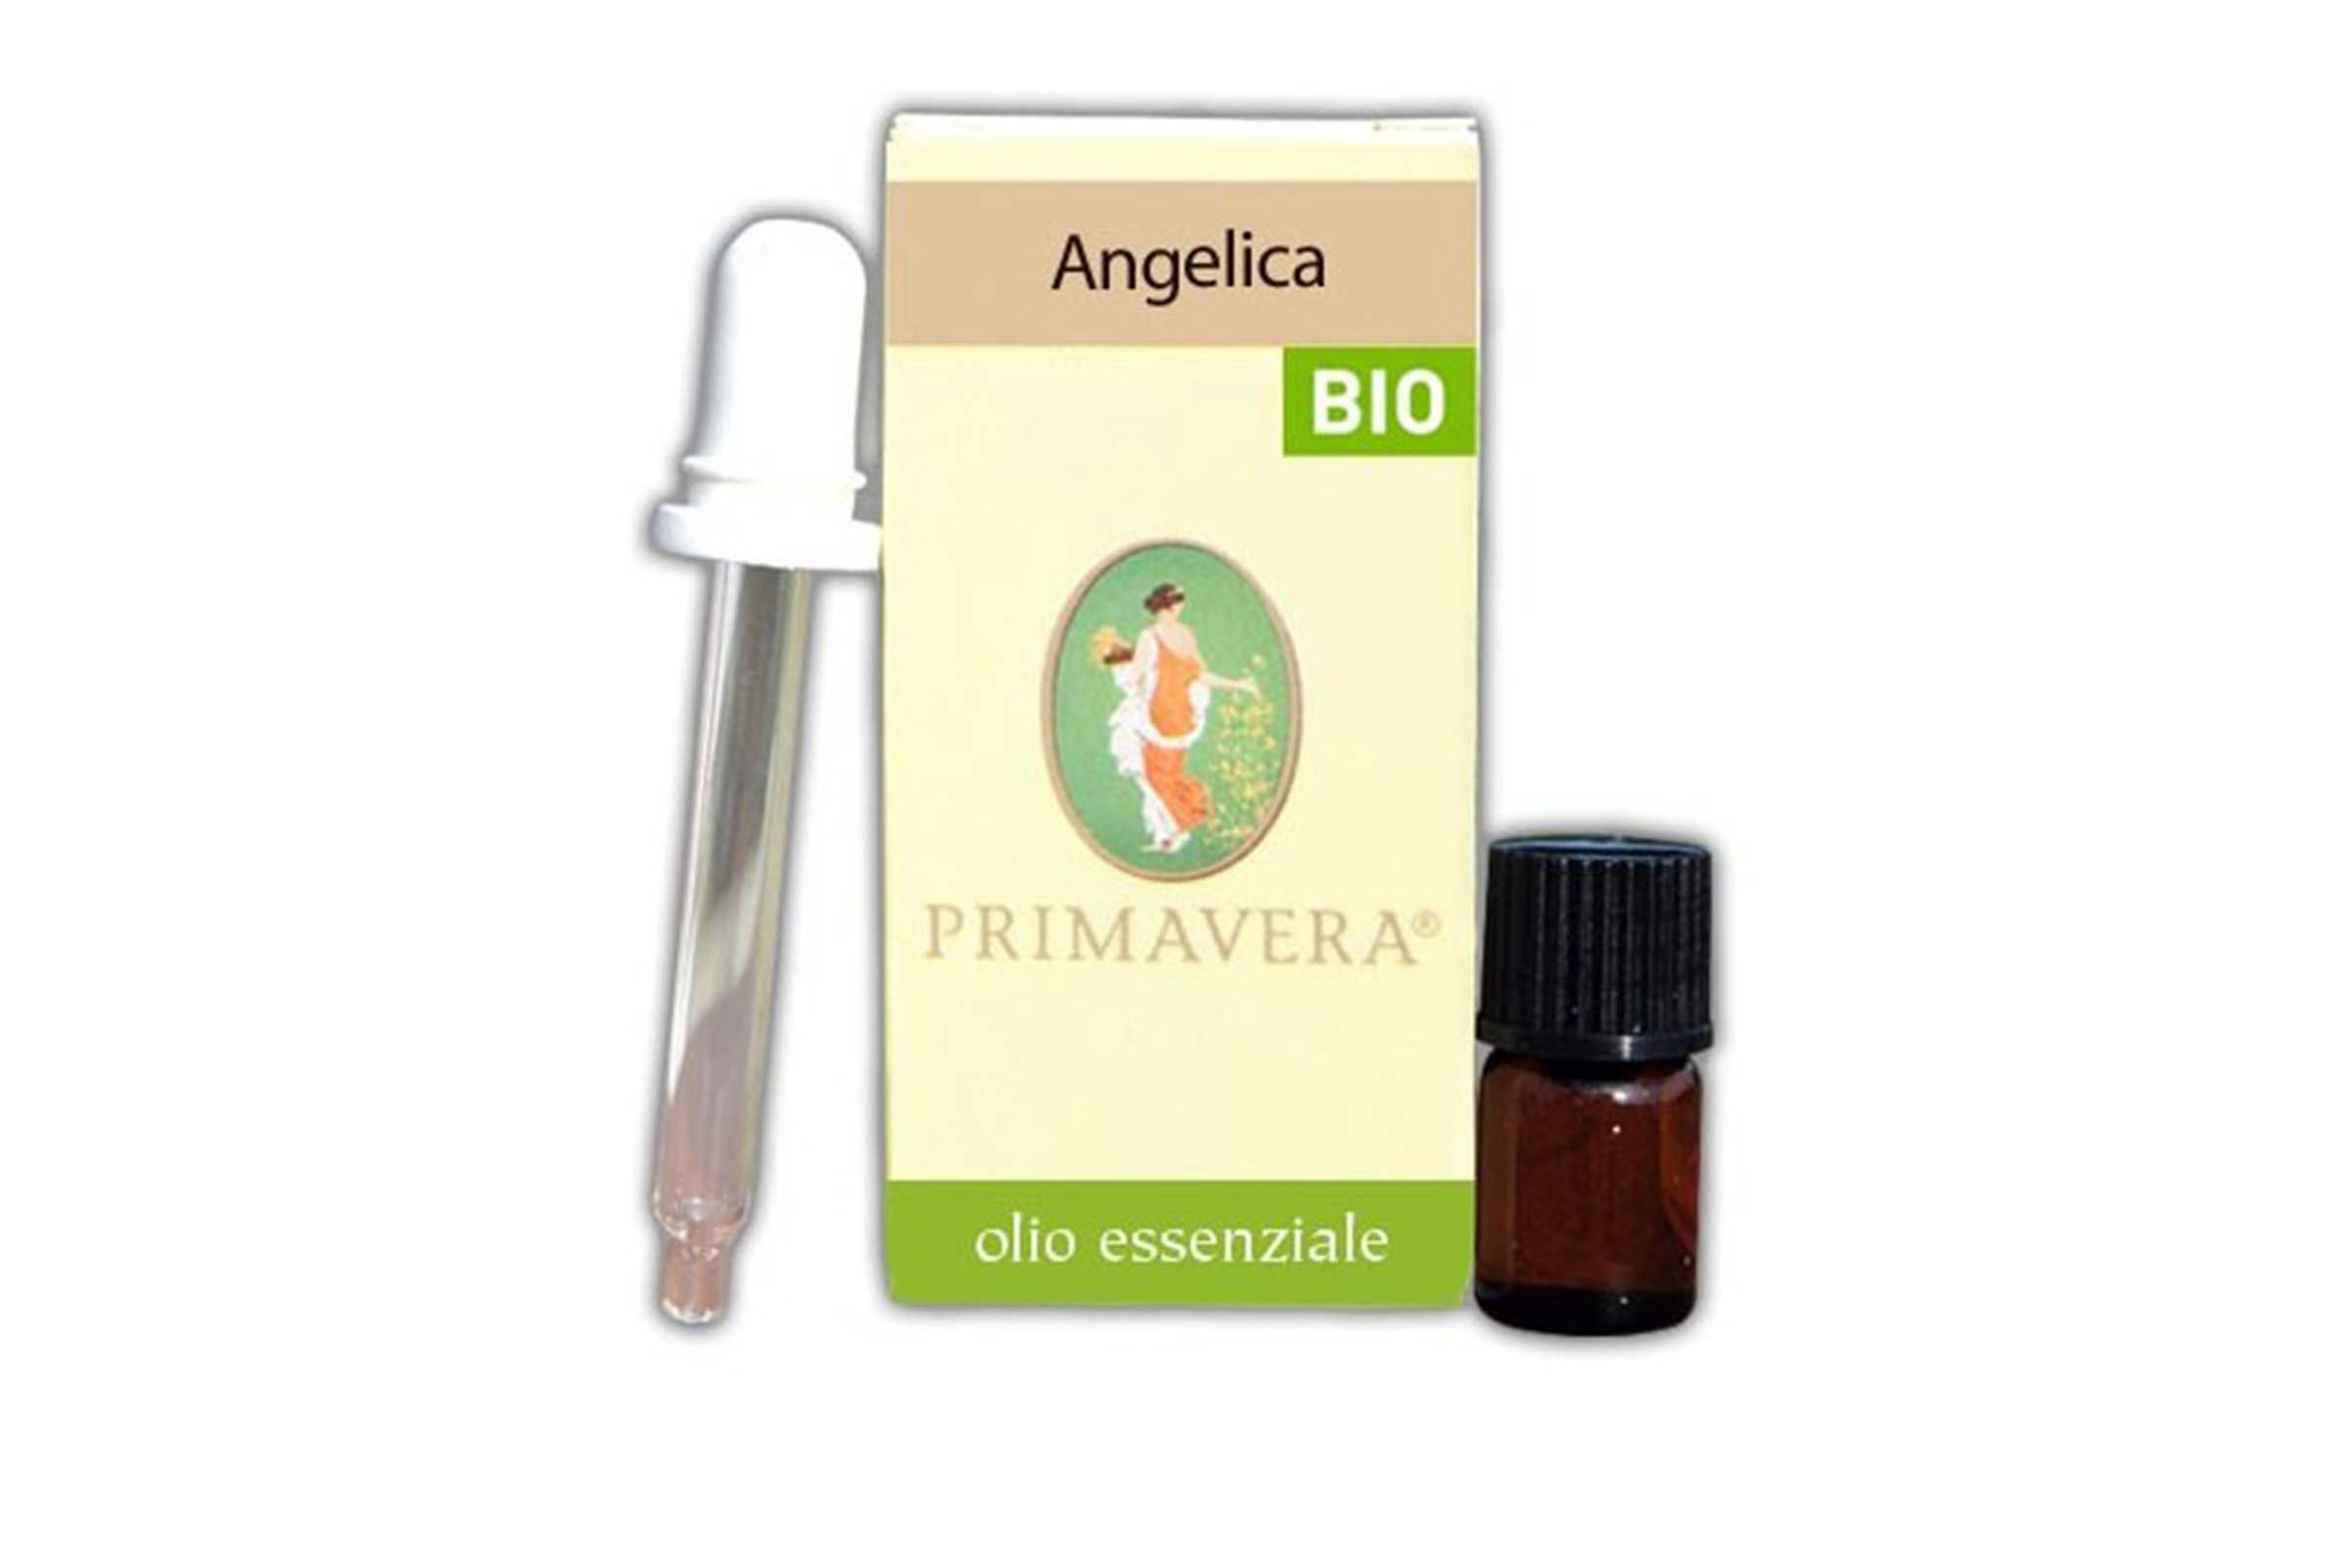 Olio essenziale di Angelica - Angelica 1 ml BIO-CODEX